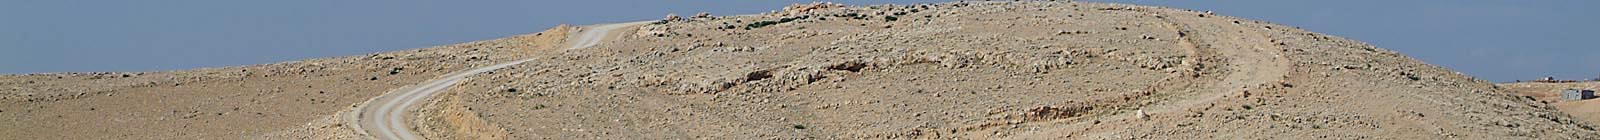 Jordan, Banner, Jordan mountain desert dirt road.